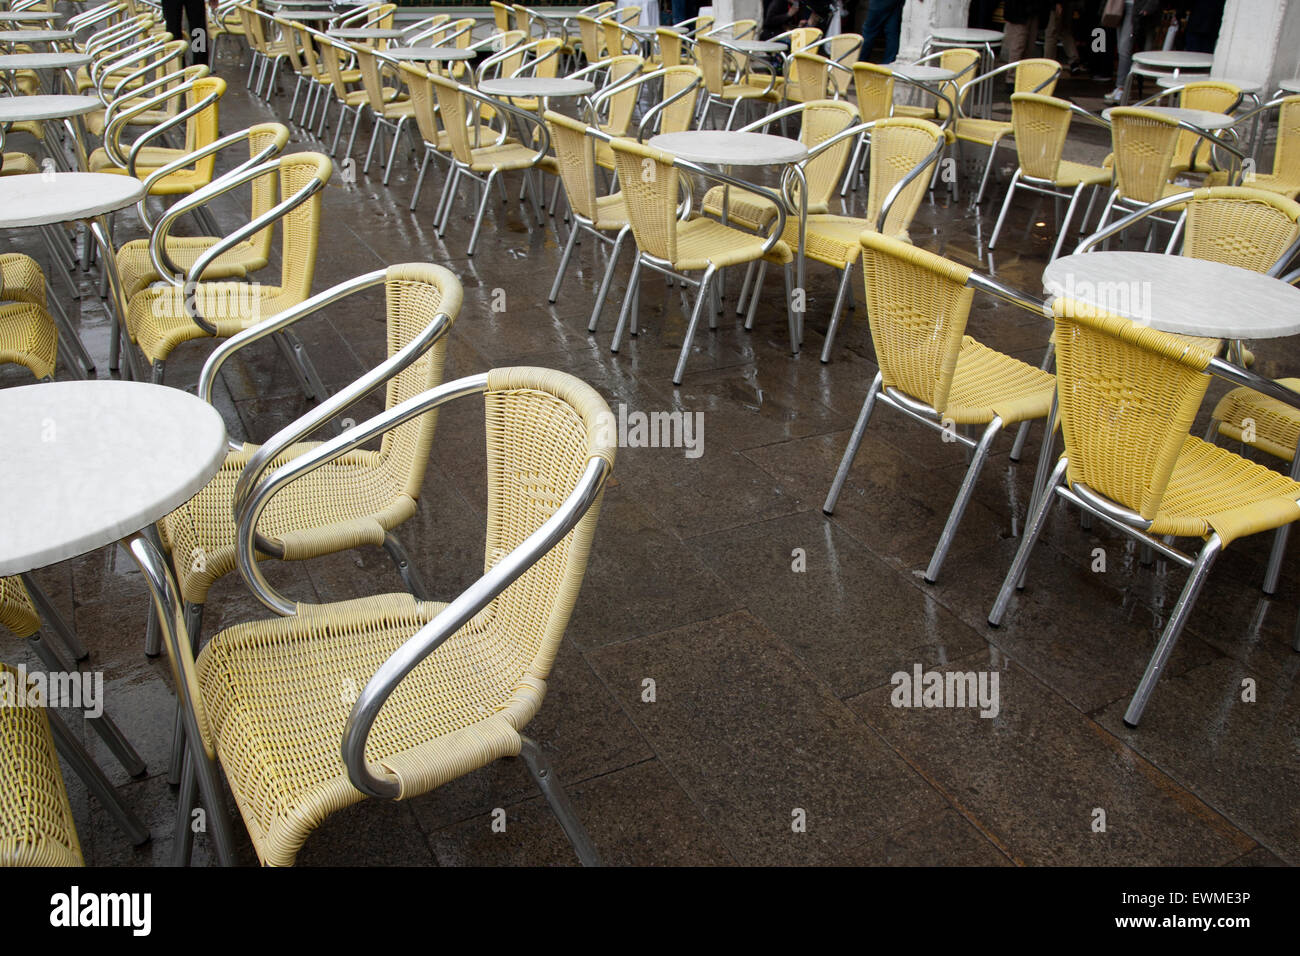 Cafe Tables et chaises à San Marcos - la Place Saint Marc, Venise, Italie Banque D'Images